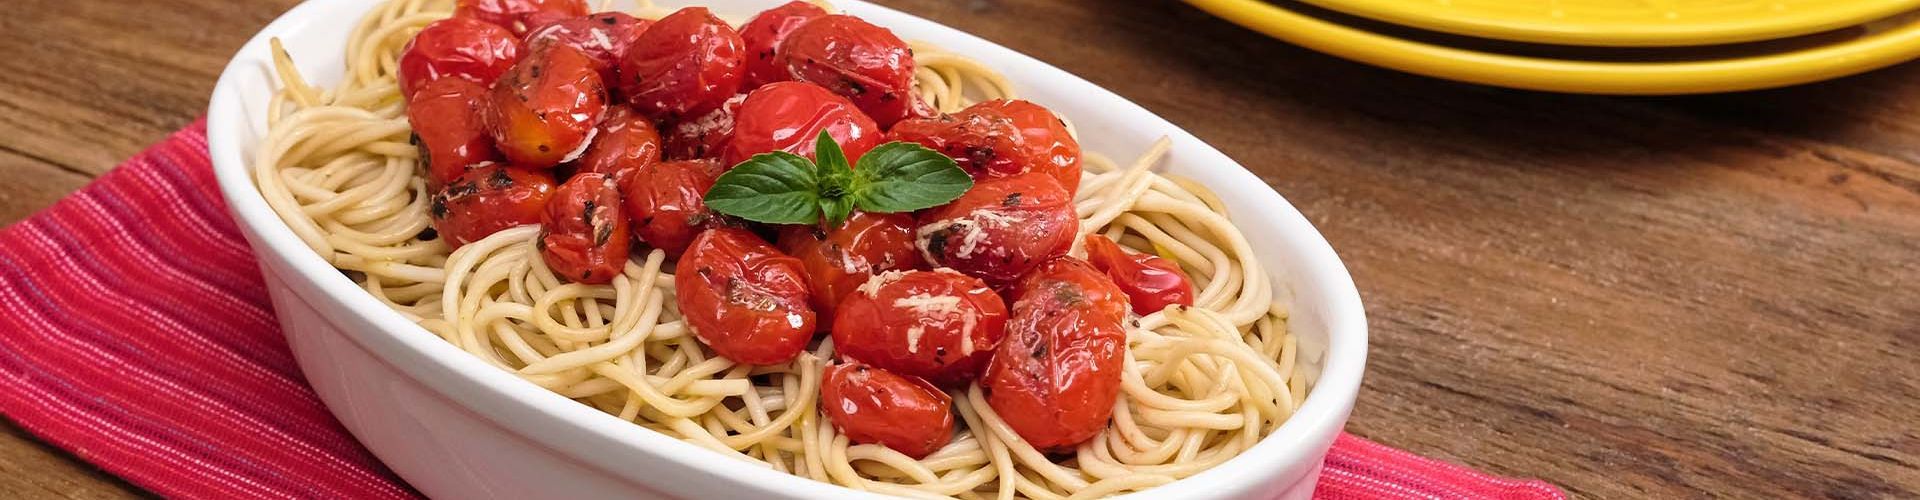 Espaguete com tomates confit